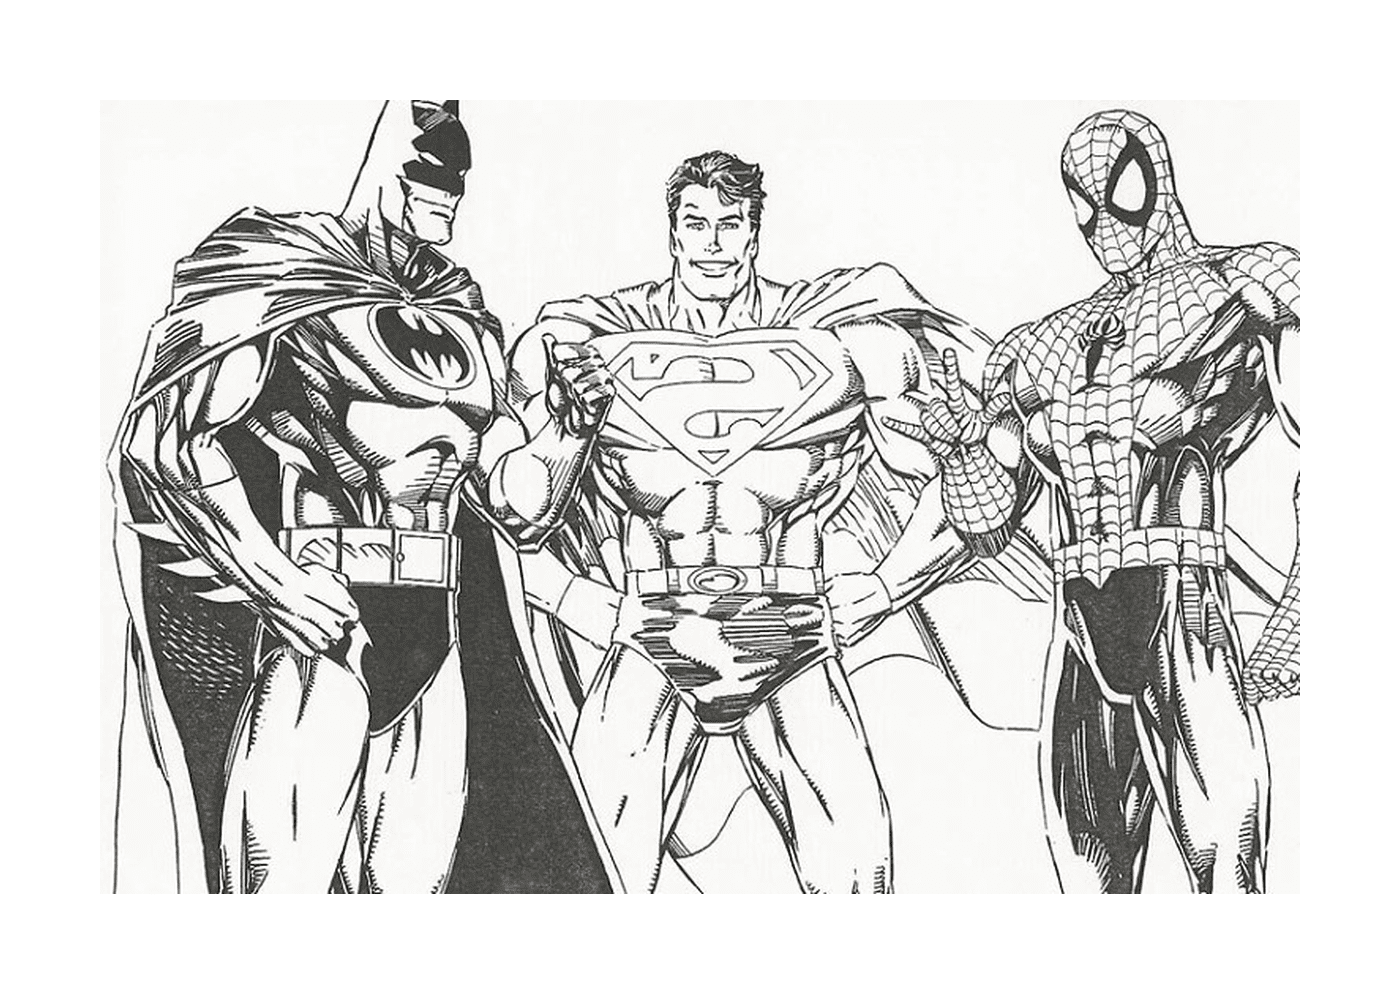  一群超级英雄并肩站在一起 包括蝙蝠侠 蜘蛛侠和超人 